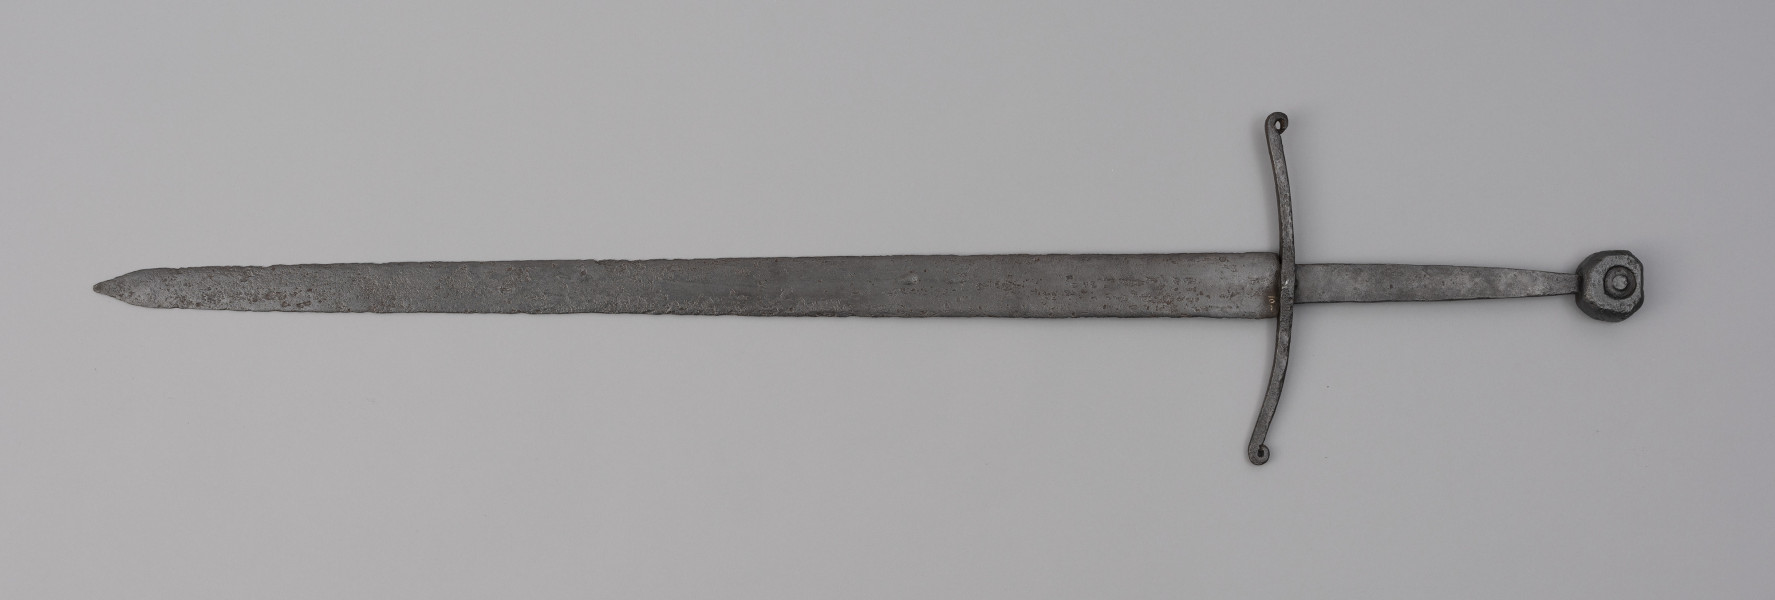 miecz typu XIIIa H2 1b (Oakeshott) - ujęcie z tyłu; Miecz w typie: XIIIa, H2, 1b. Głownia o dł. 88,1 cm i szer. 4,9 cm, prosta, jednosieczna ze zbroczem, lekko zbieżna ku sztychowi. Sztych kończysty. Trzpień głowni lekko zwężający się ku końcowi. Jelec krzyżowy, lekko wygięty ku głowni, z zawiniętymi ku głowicy końcami ramion. Głowica nieregularna, ośmioboczna, z rytym dużym kołem na płaszczyznach. Znaki i zdobienia: